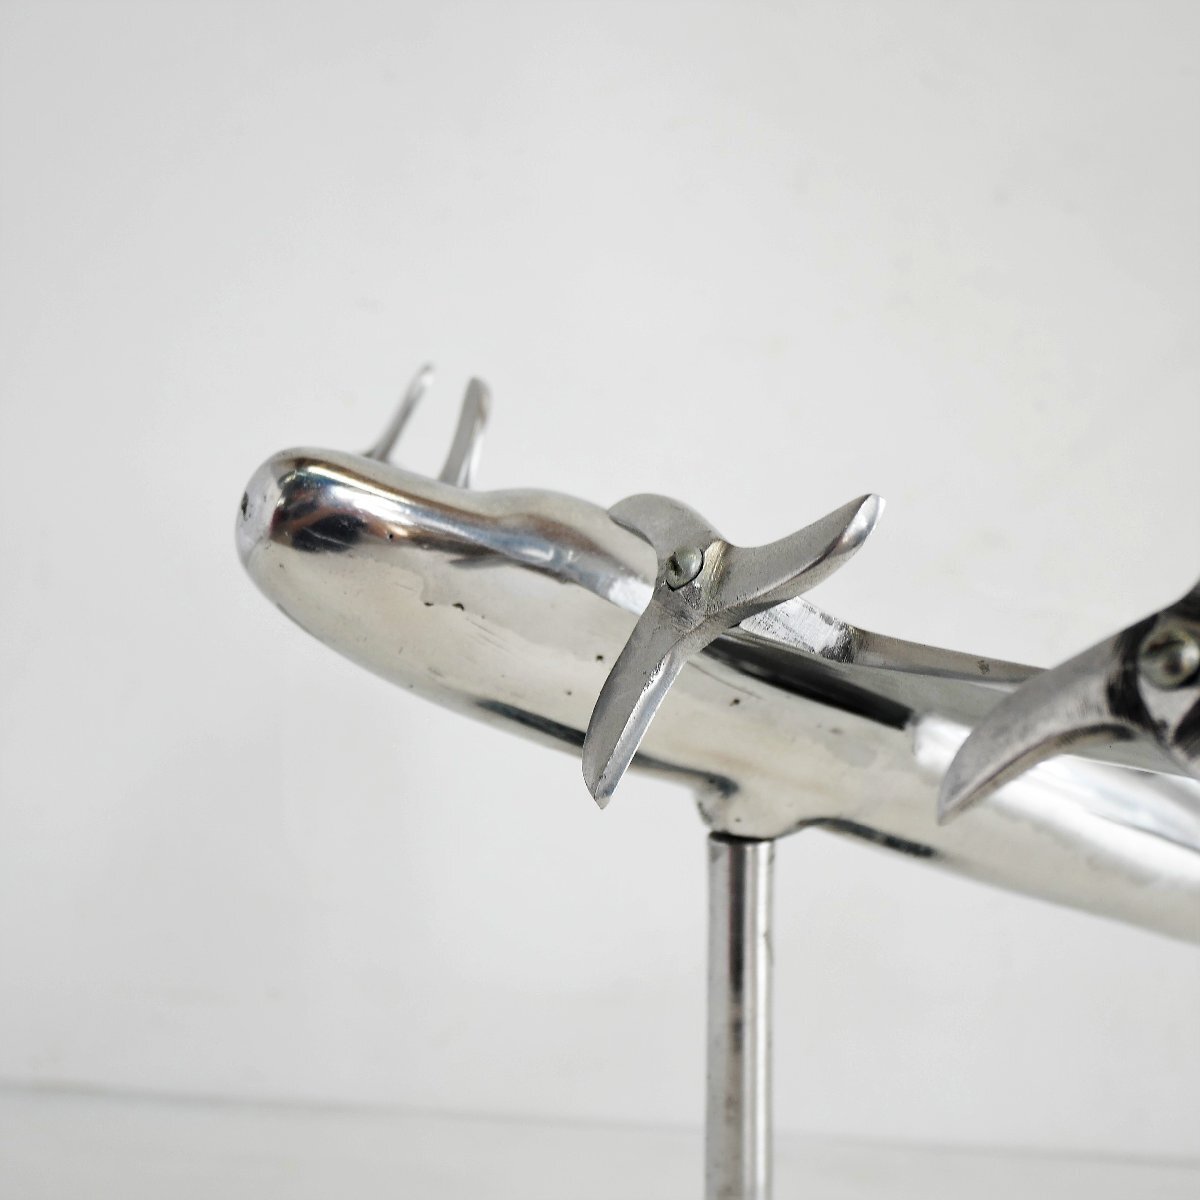 1960's アメリカ ヴィンテージ エアプレイン / 模型飛行機 アルミニウム製 メタルオブジェ アンティーク 置物 #506-221-516_画像9